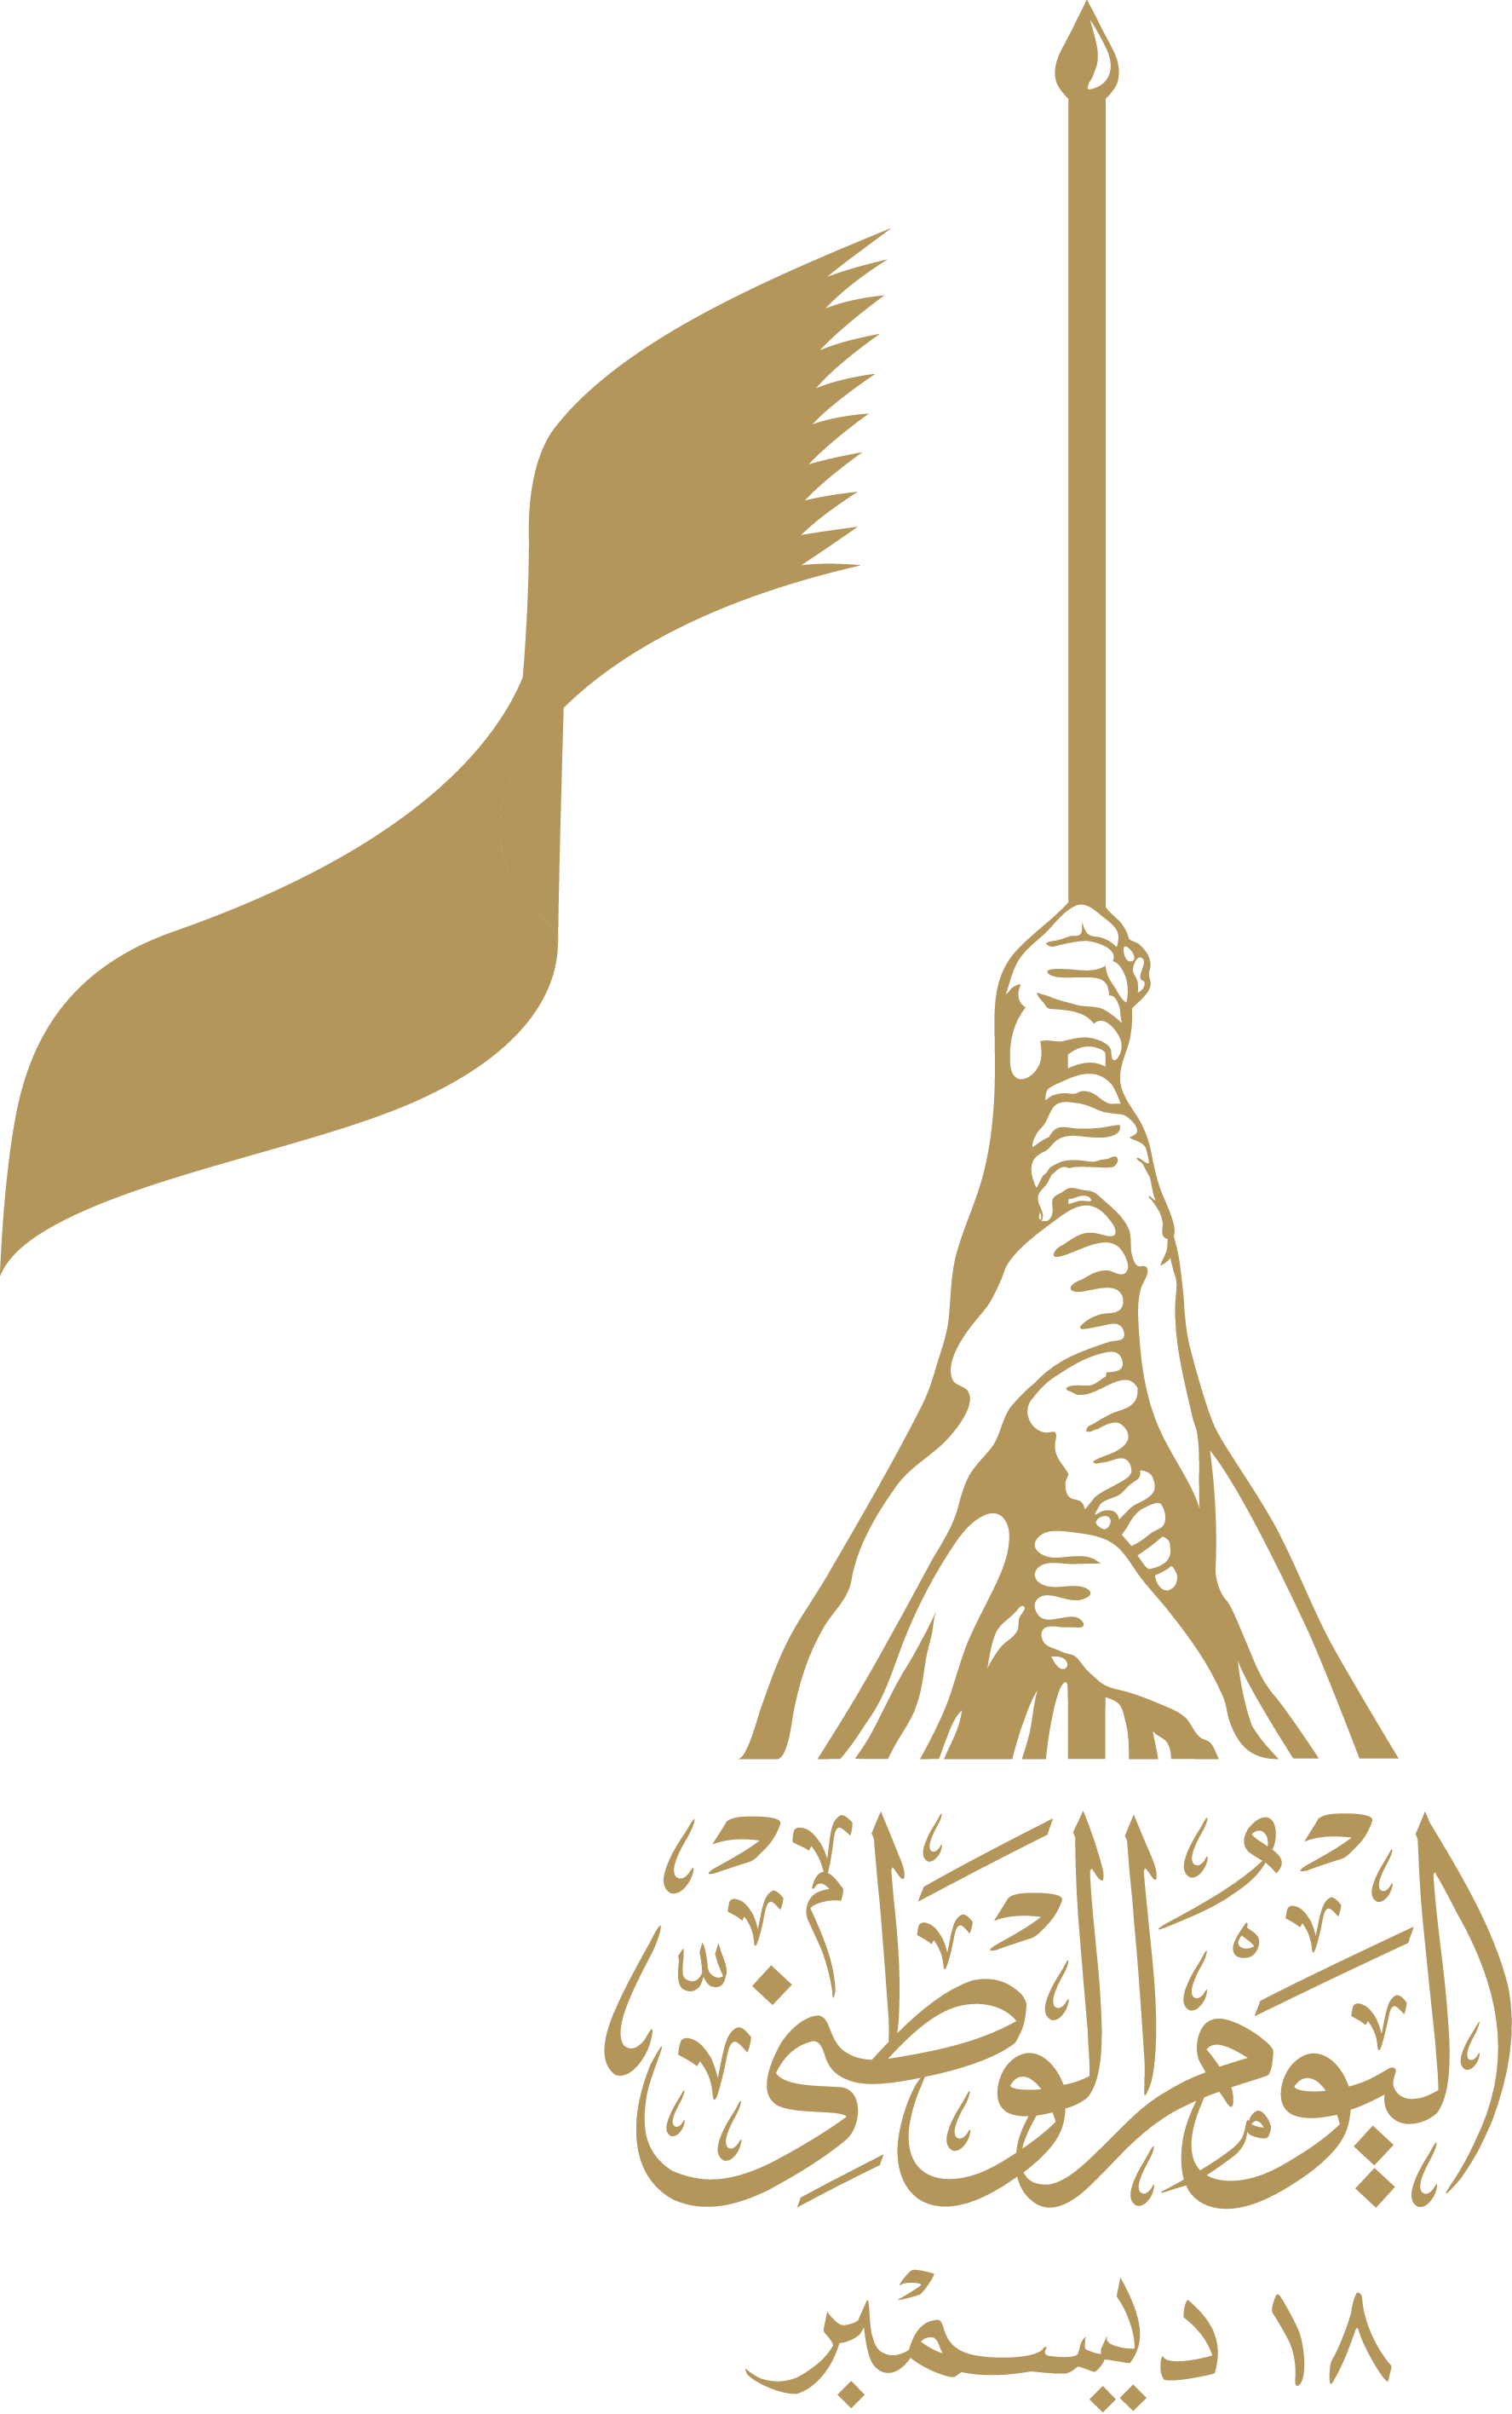 هوية وشعار اليوم الوطني القطري  2020